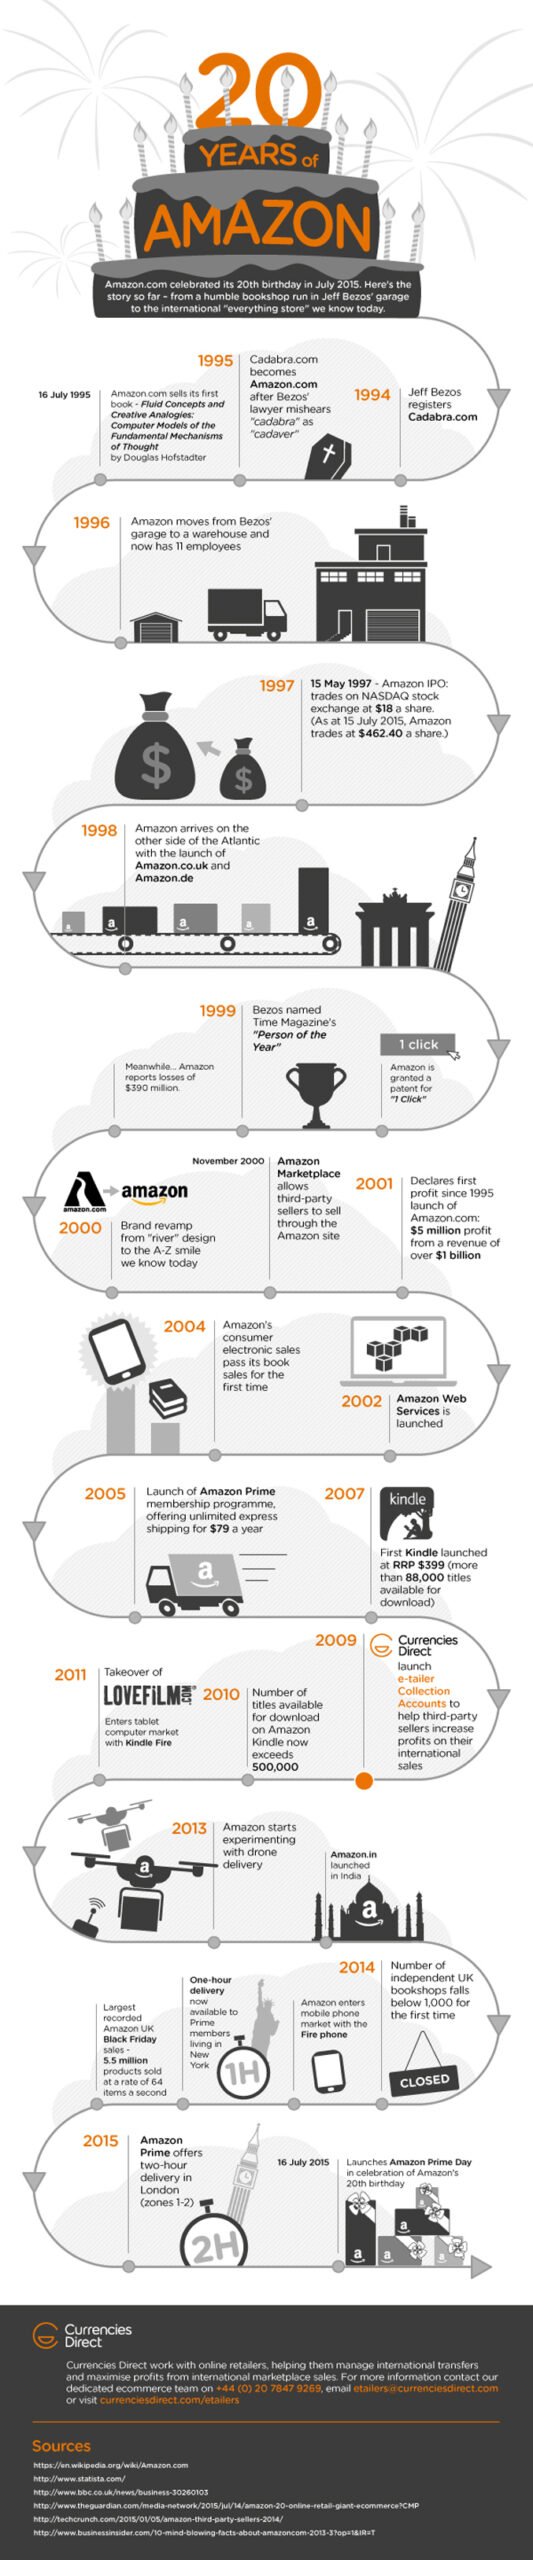 20 Years of Amazon